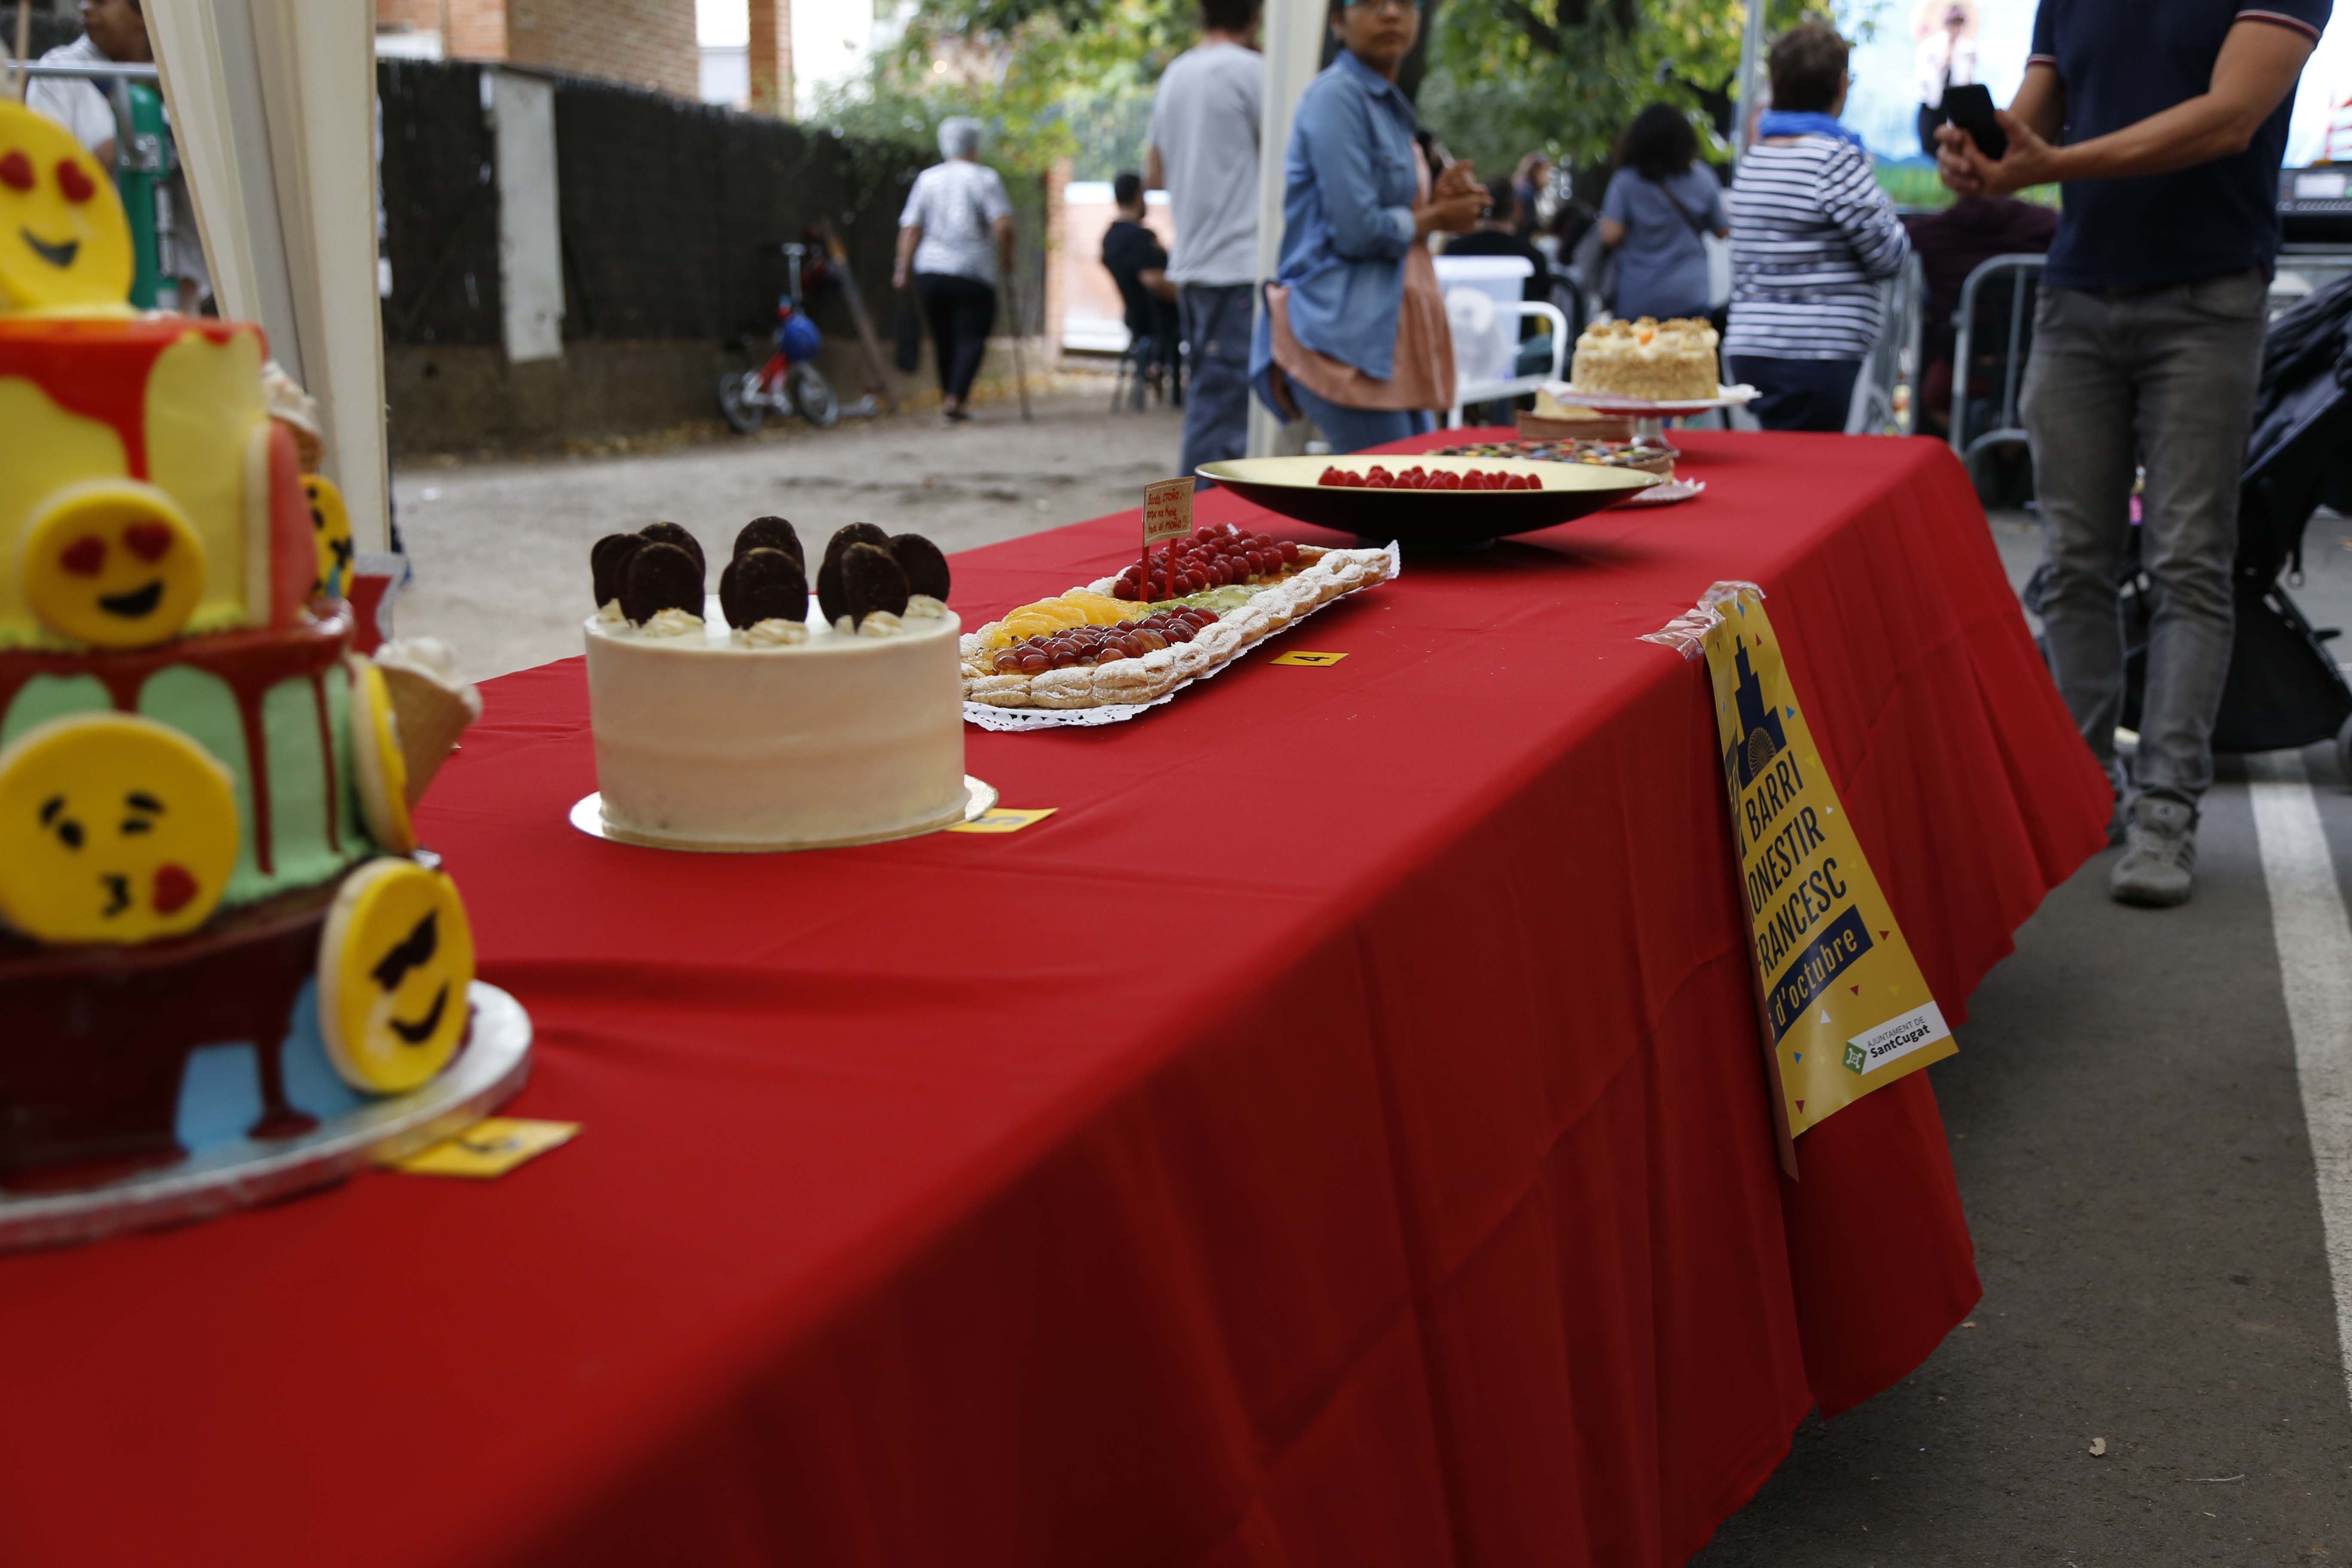 Concurs de pastissos a la Festa Major del barri del Monestir- Sant Frances 2019. FOTO: Anna Bassa